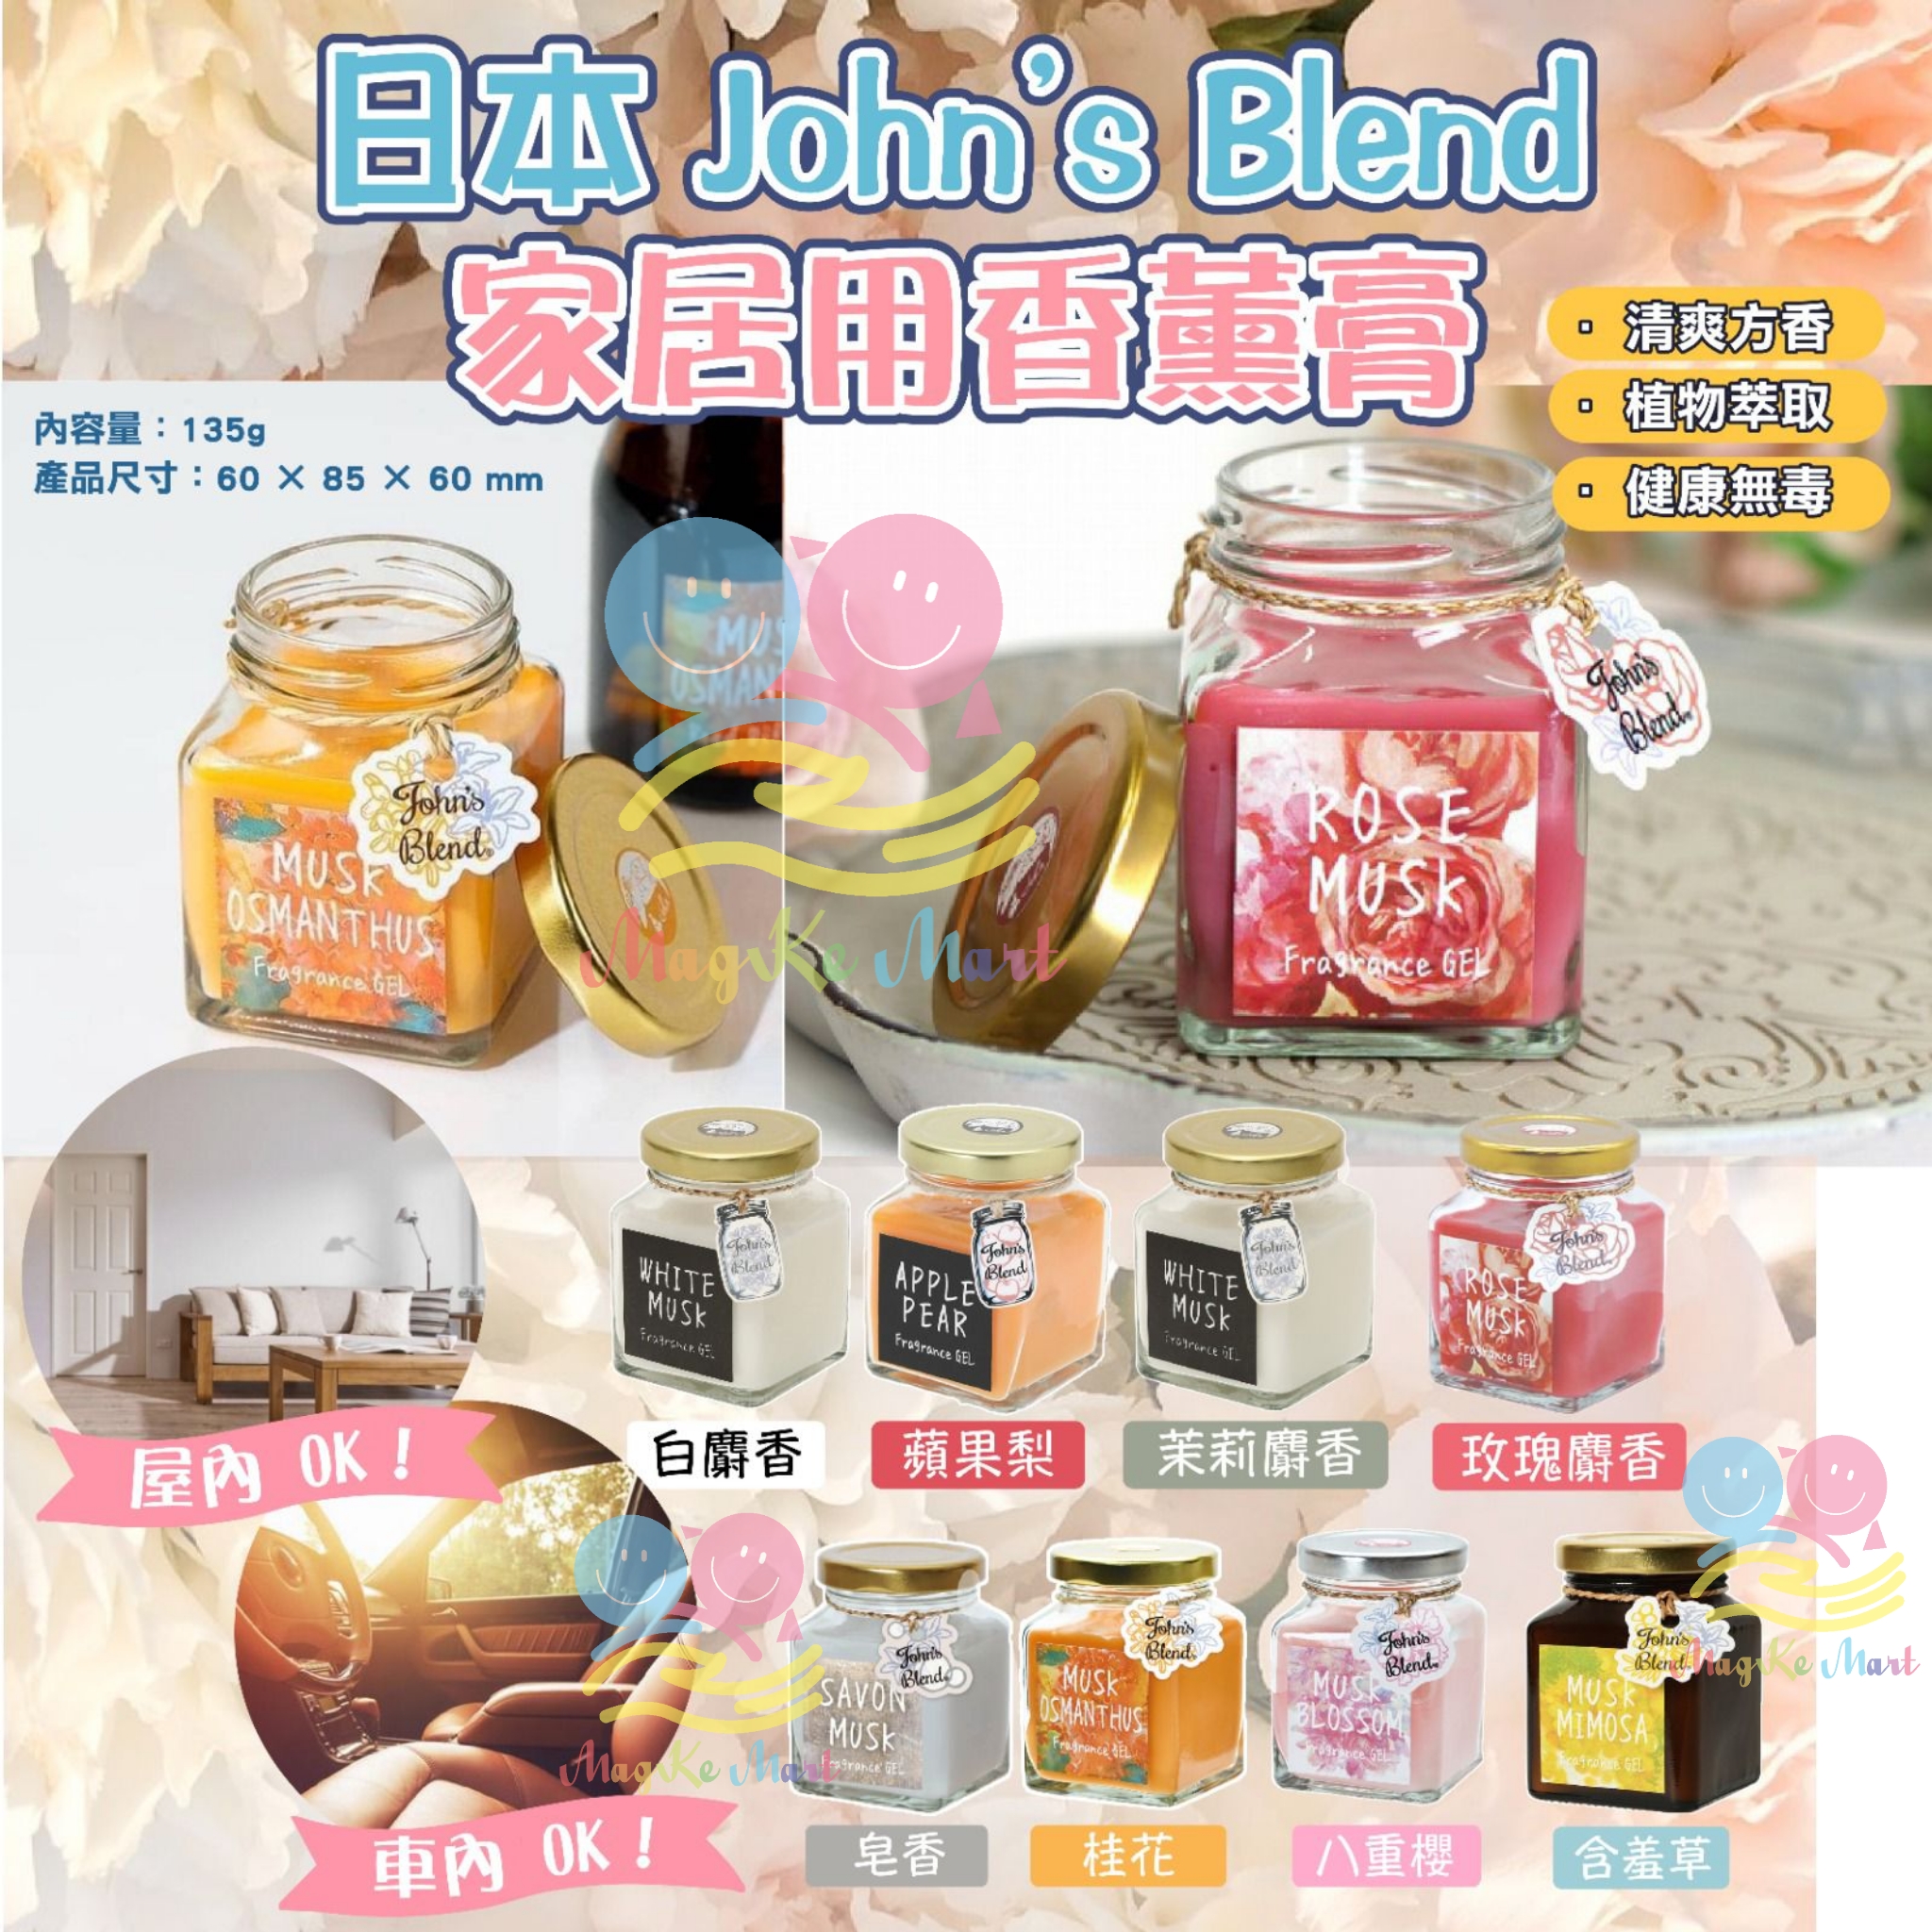 (New)John’s Blend 室內香氛膏 135g